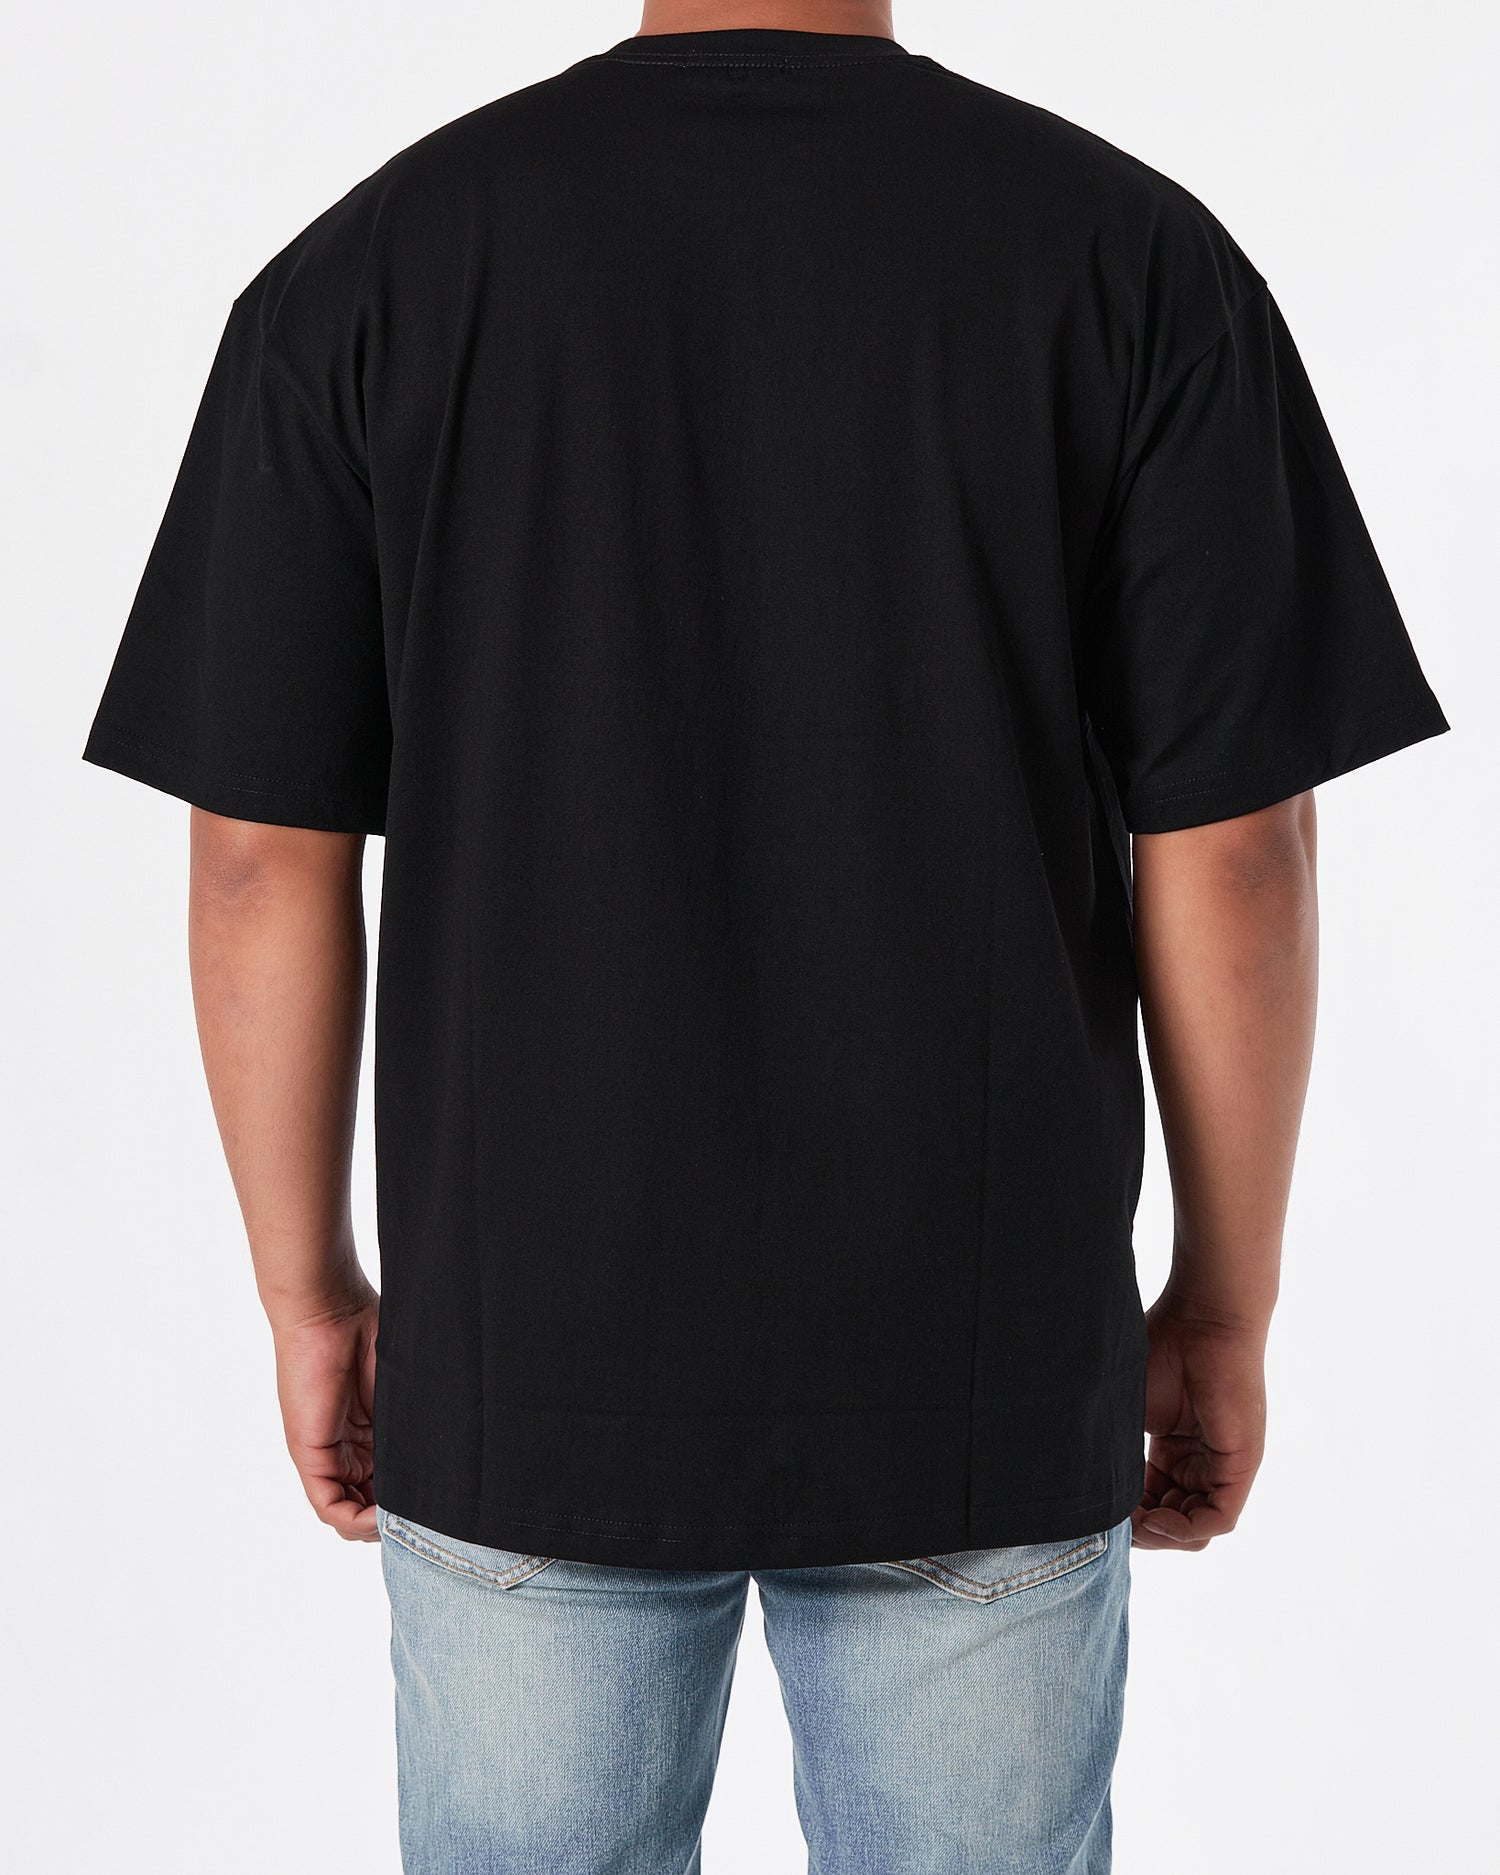 BAL The Simpsons Printed Men Black T-Shirt 17.90